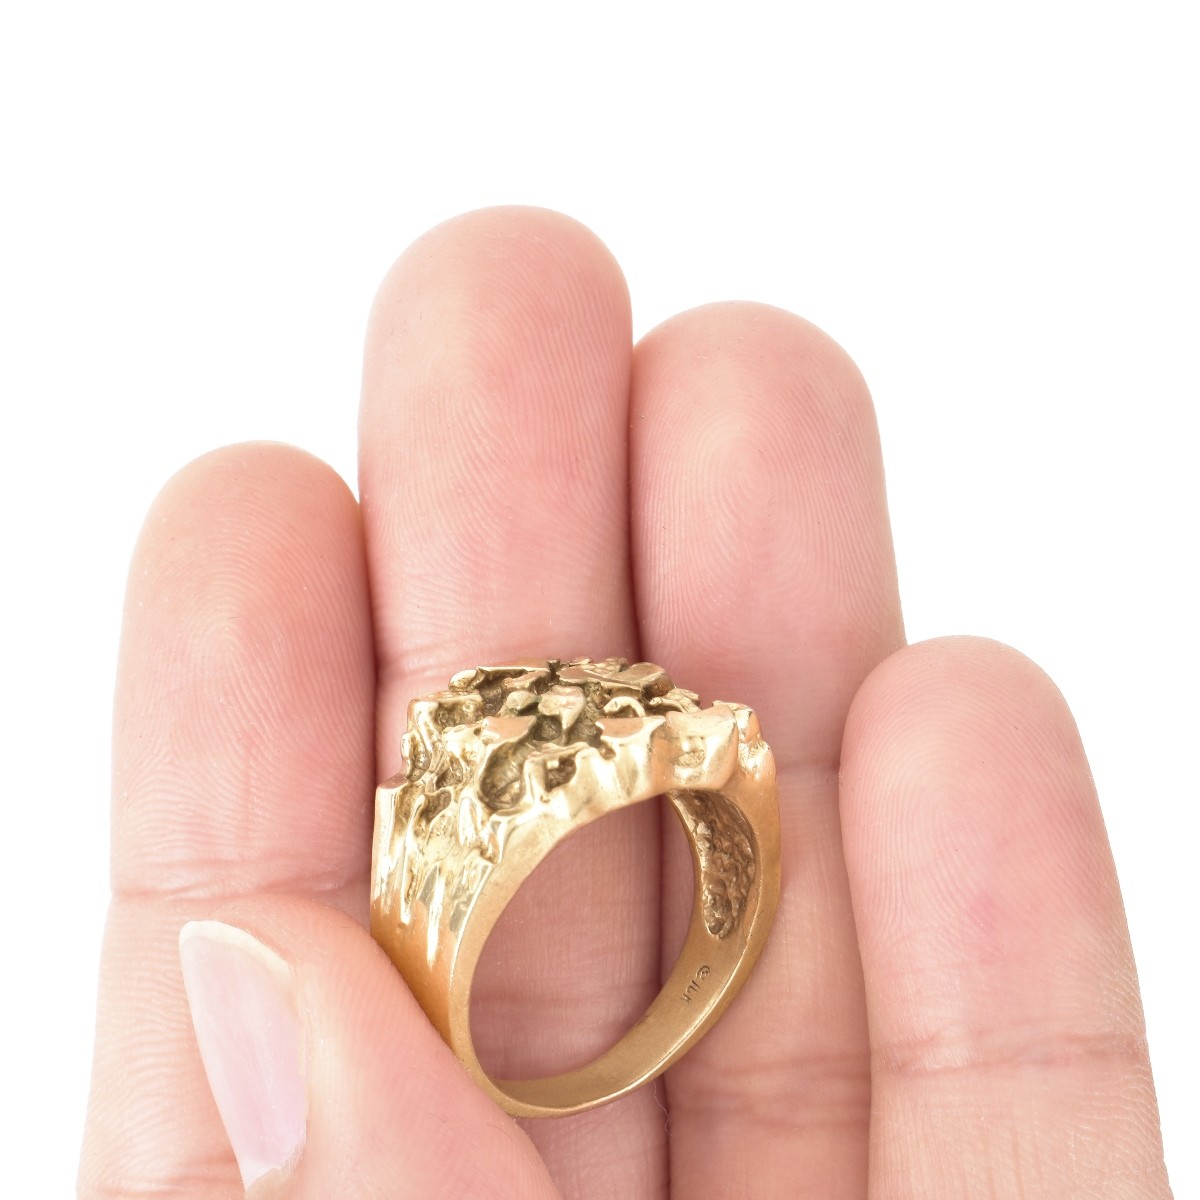 Man's Vintage 10K Gold Ring